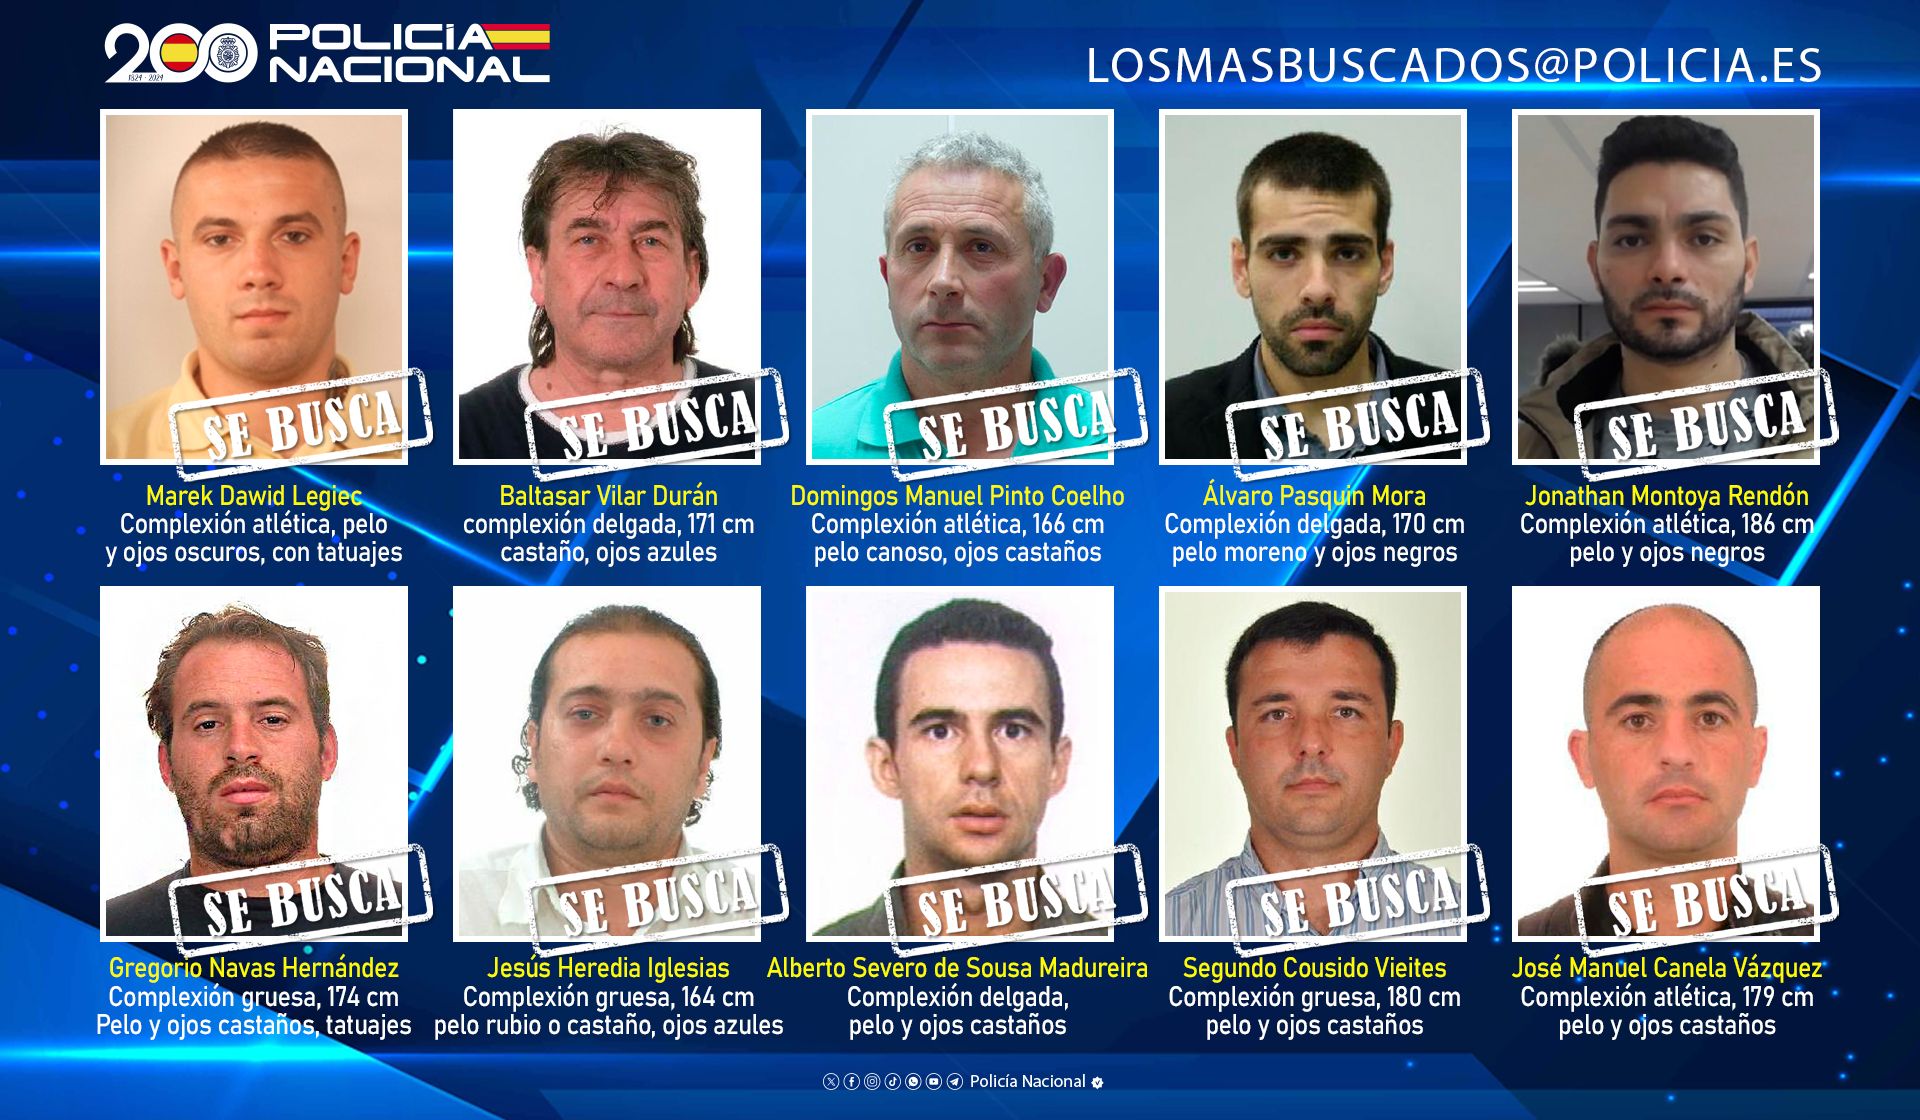 Estos son los diez peligrosos fugitivos que busca la Policía Nacional en España.